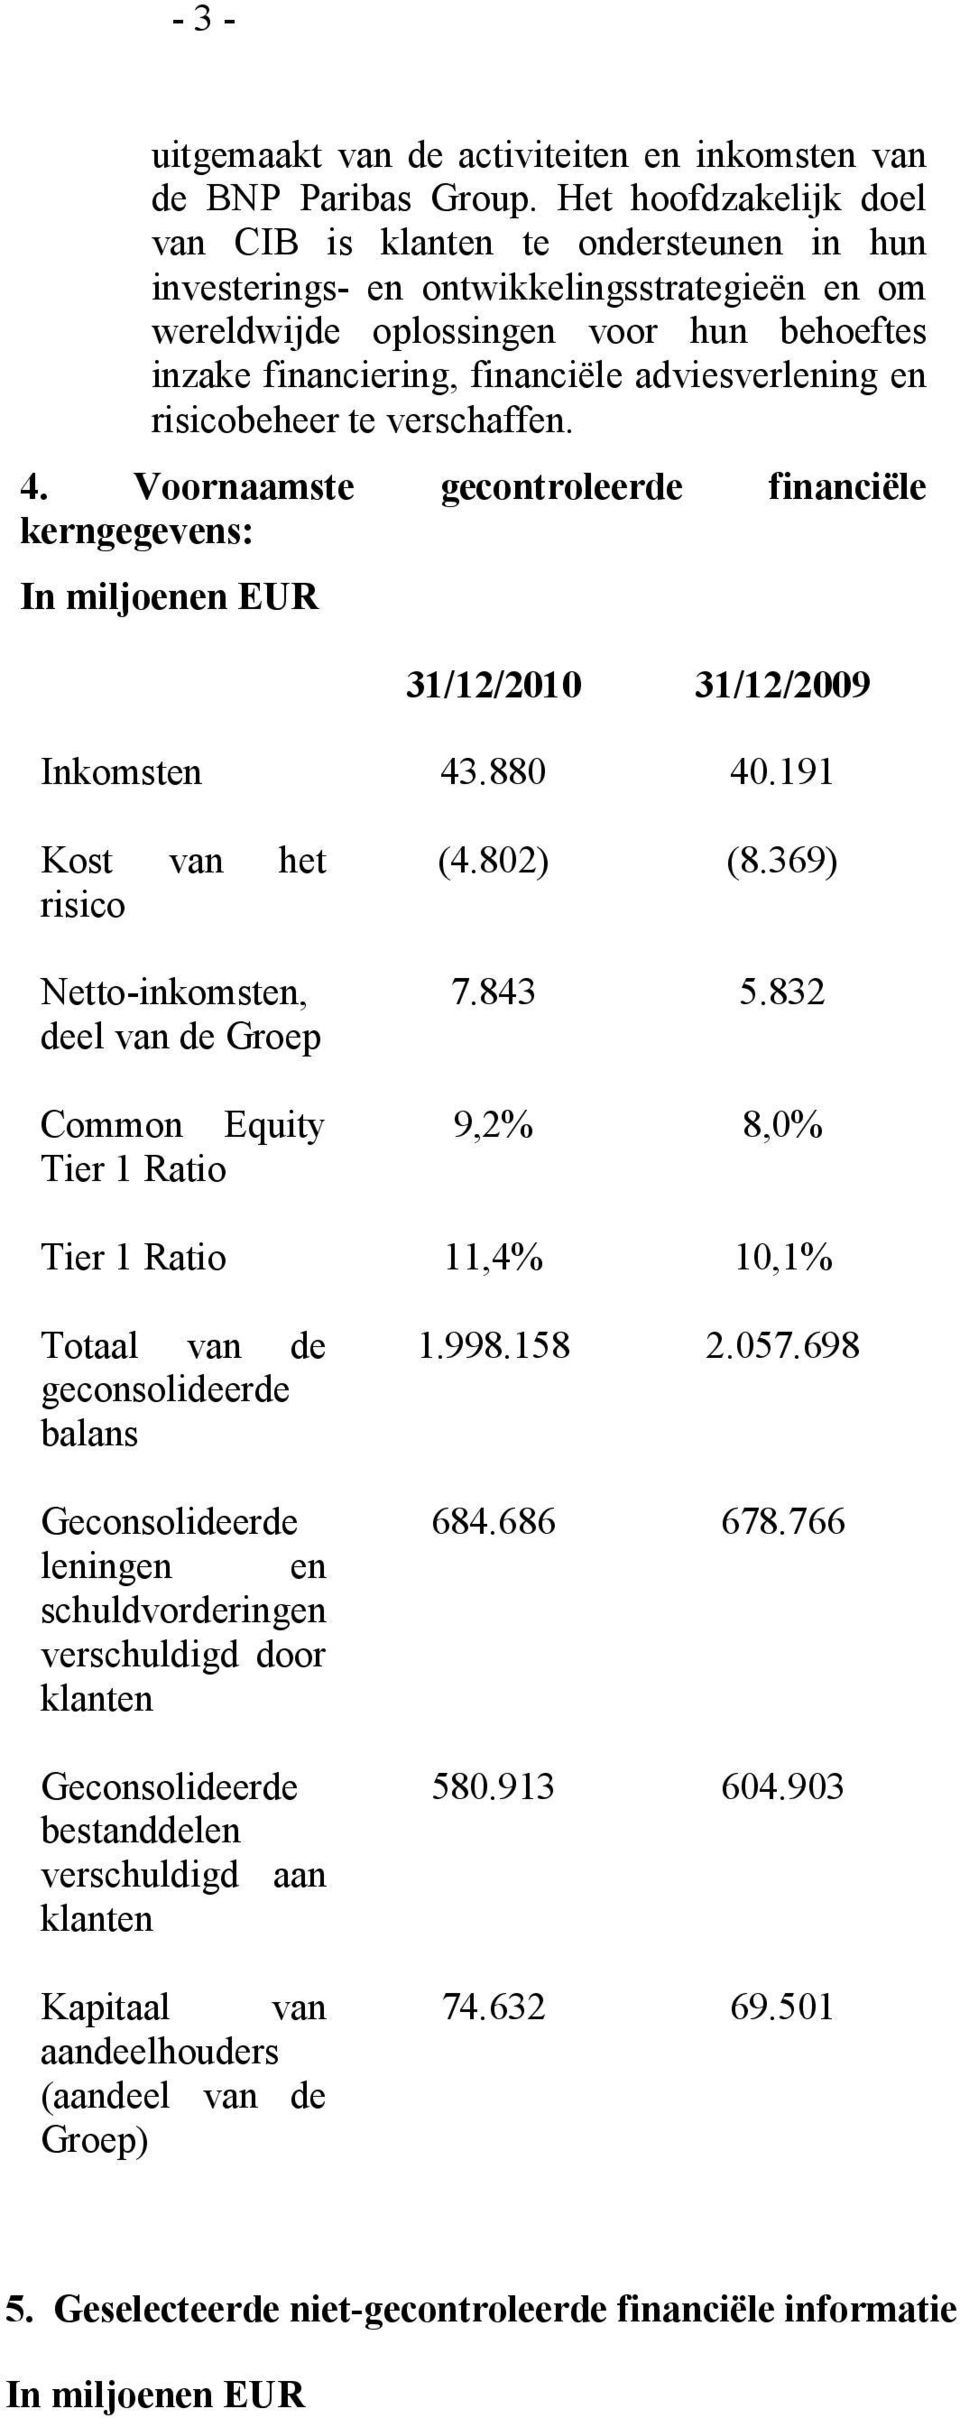 adviesverlening en risicobeheer te verschaffen. 4. Voornaamste gecontroleerde financiële kerngegevens: In miljoenen EUR 31/12/2010 31/12/2009 Inkomsten 43.880 40.